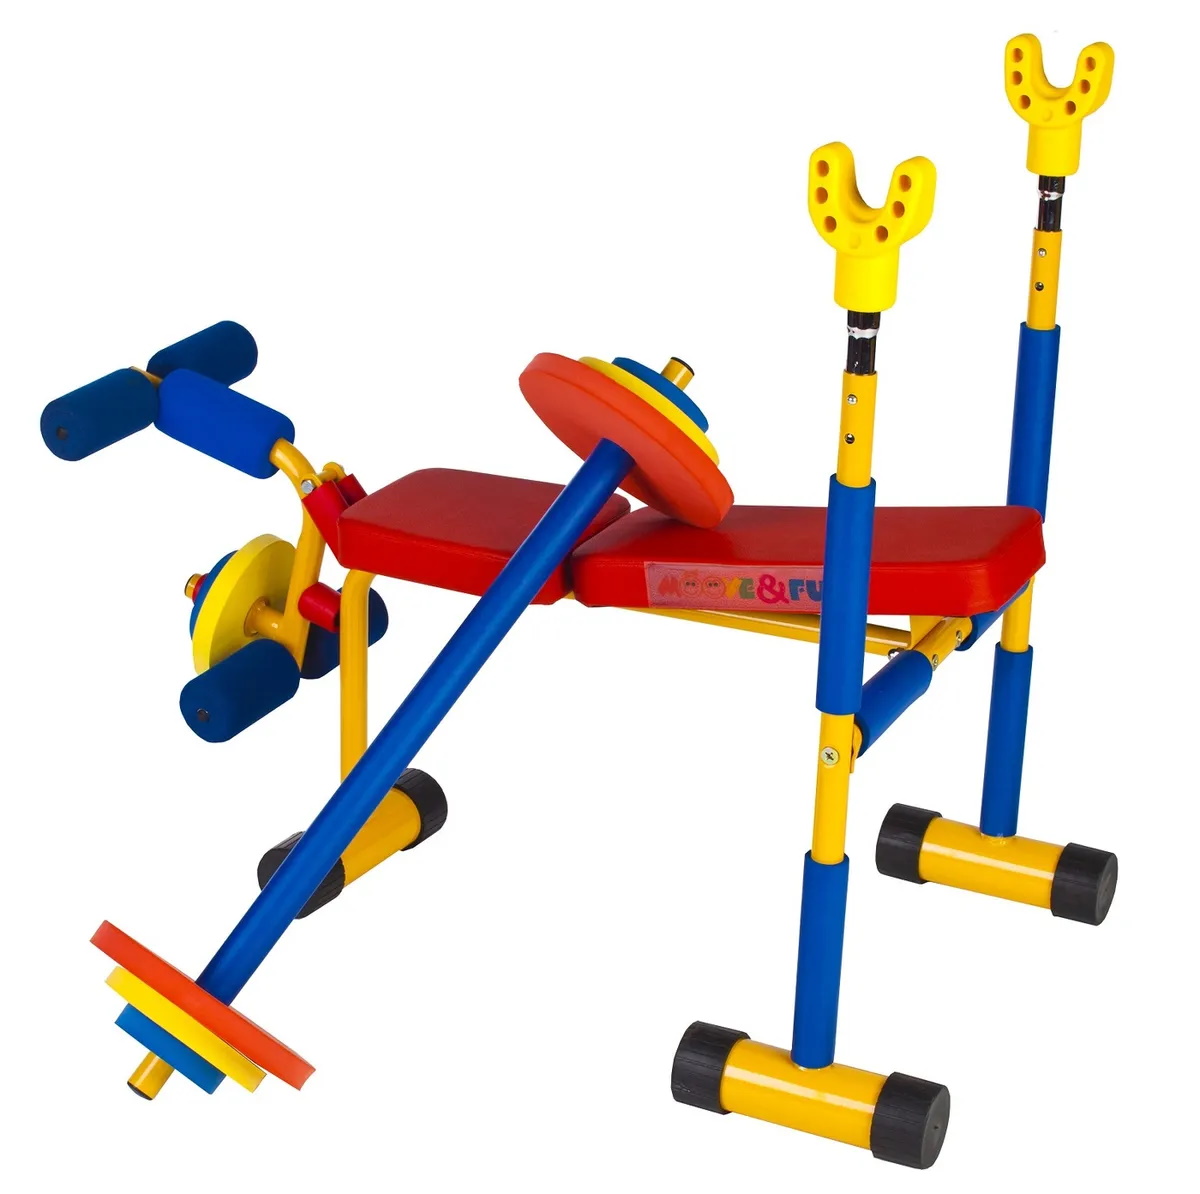 Тренажер детская скамья для жима со штангой, Moove&Fun, SH-06 